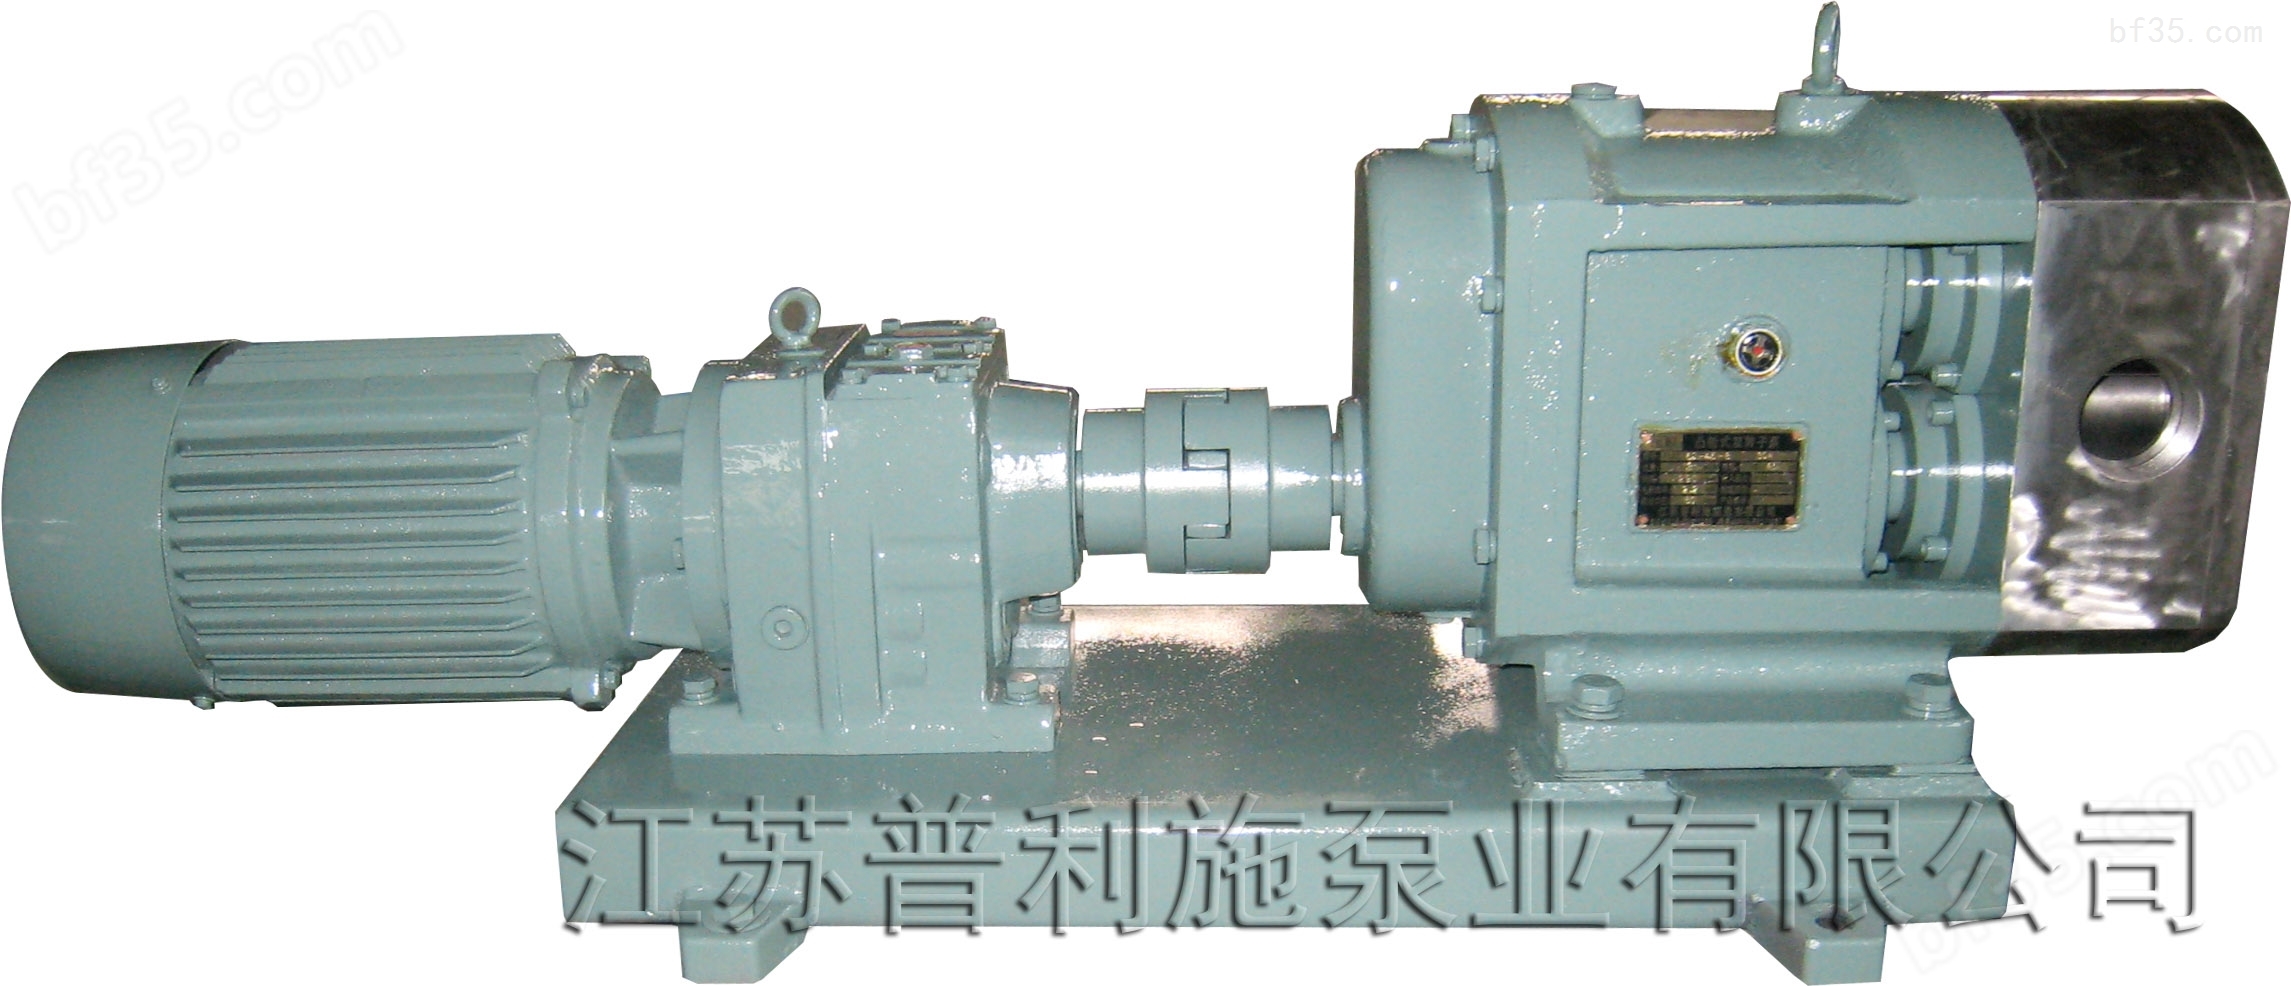 生产转子泵/凸轮转子泵/不锈钢转子泵